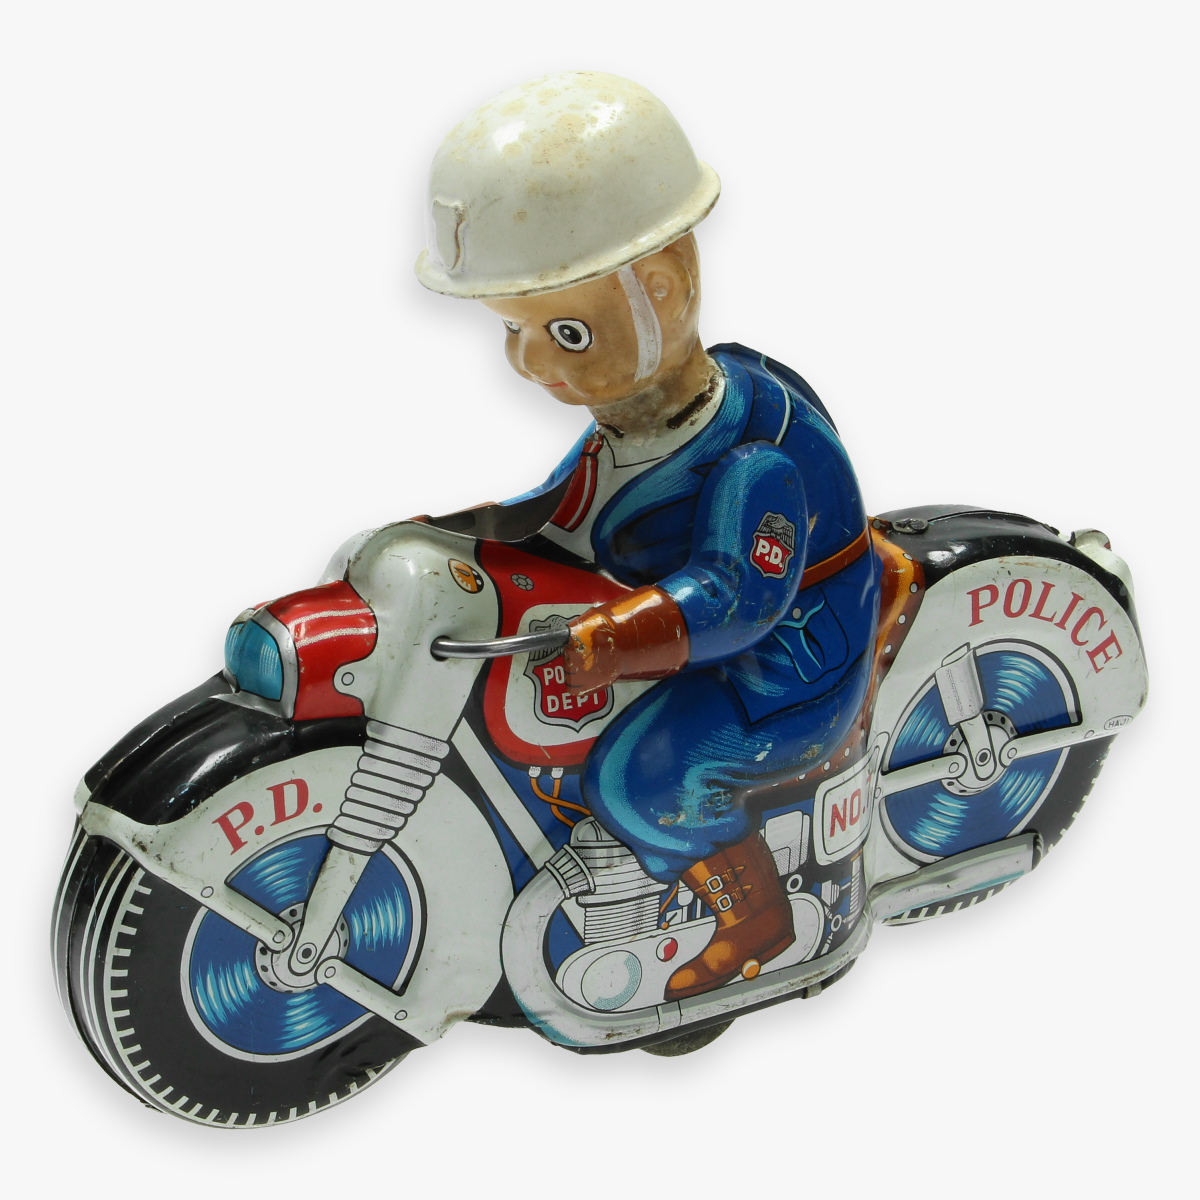 Afbeeldingen van tin toys motorcycle haji made in Japan